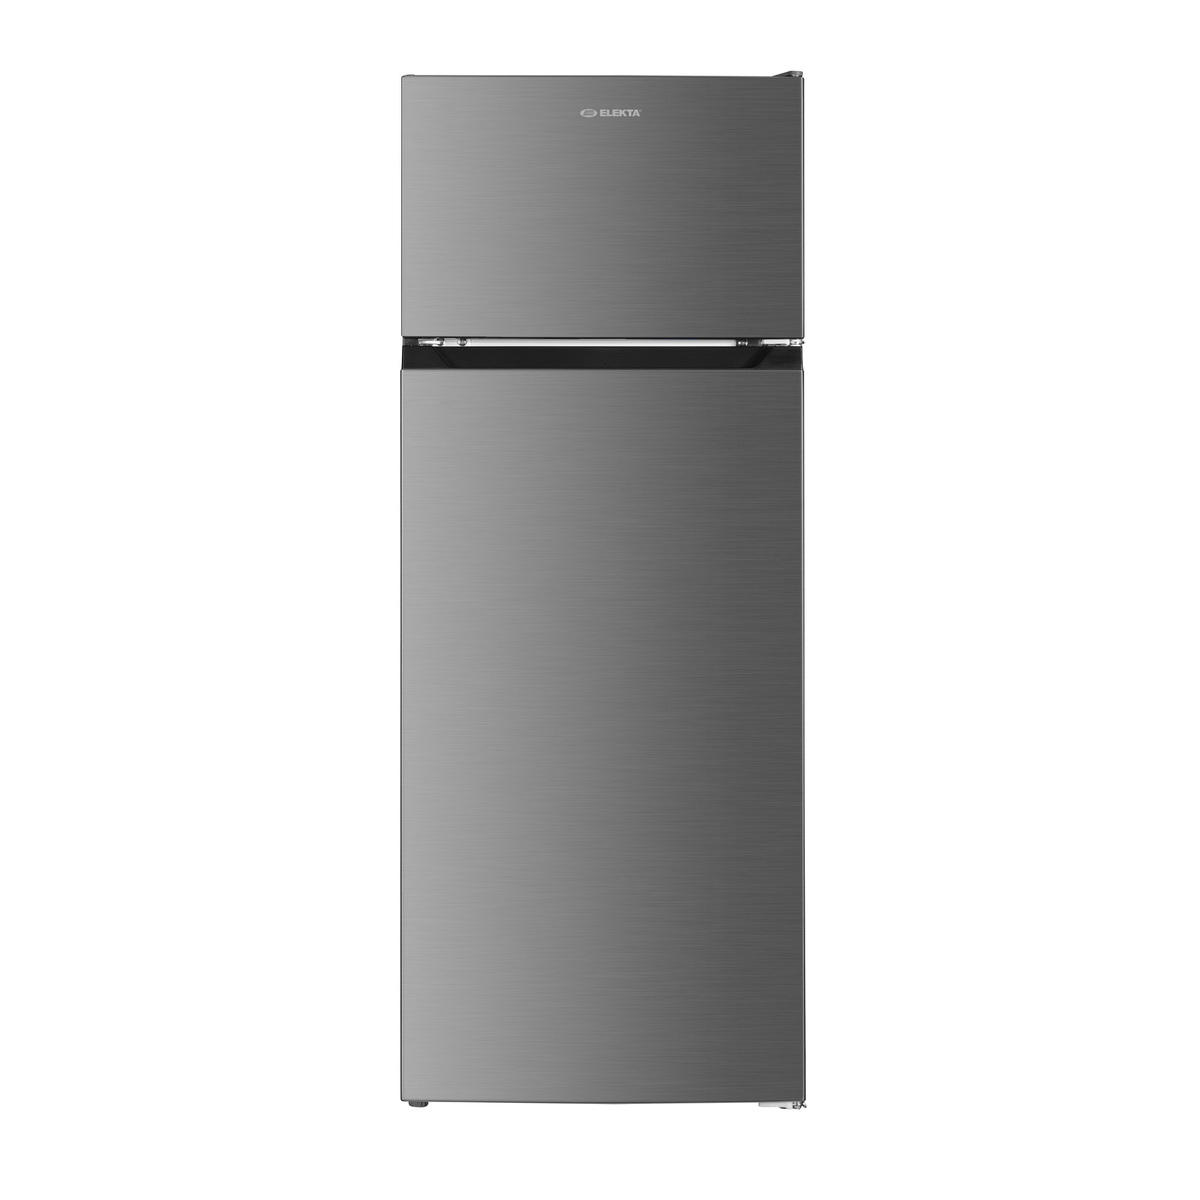 Elekta Double Door Refrigerator, 255 L, EFR255FW